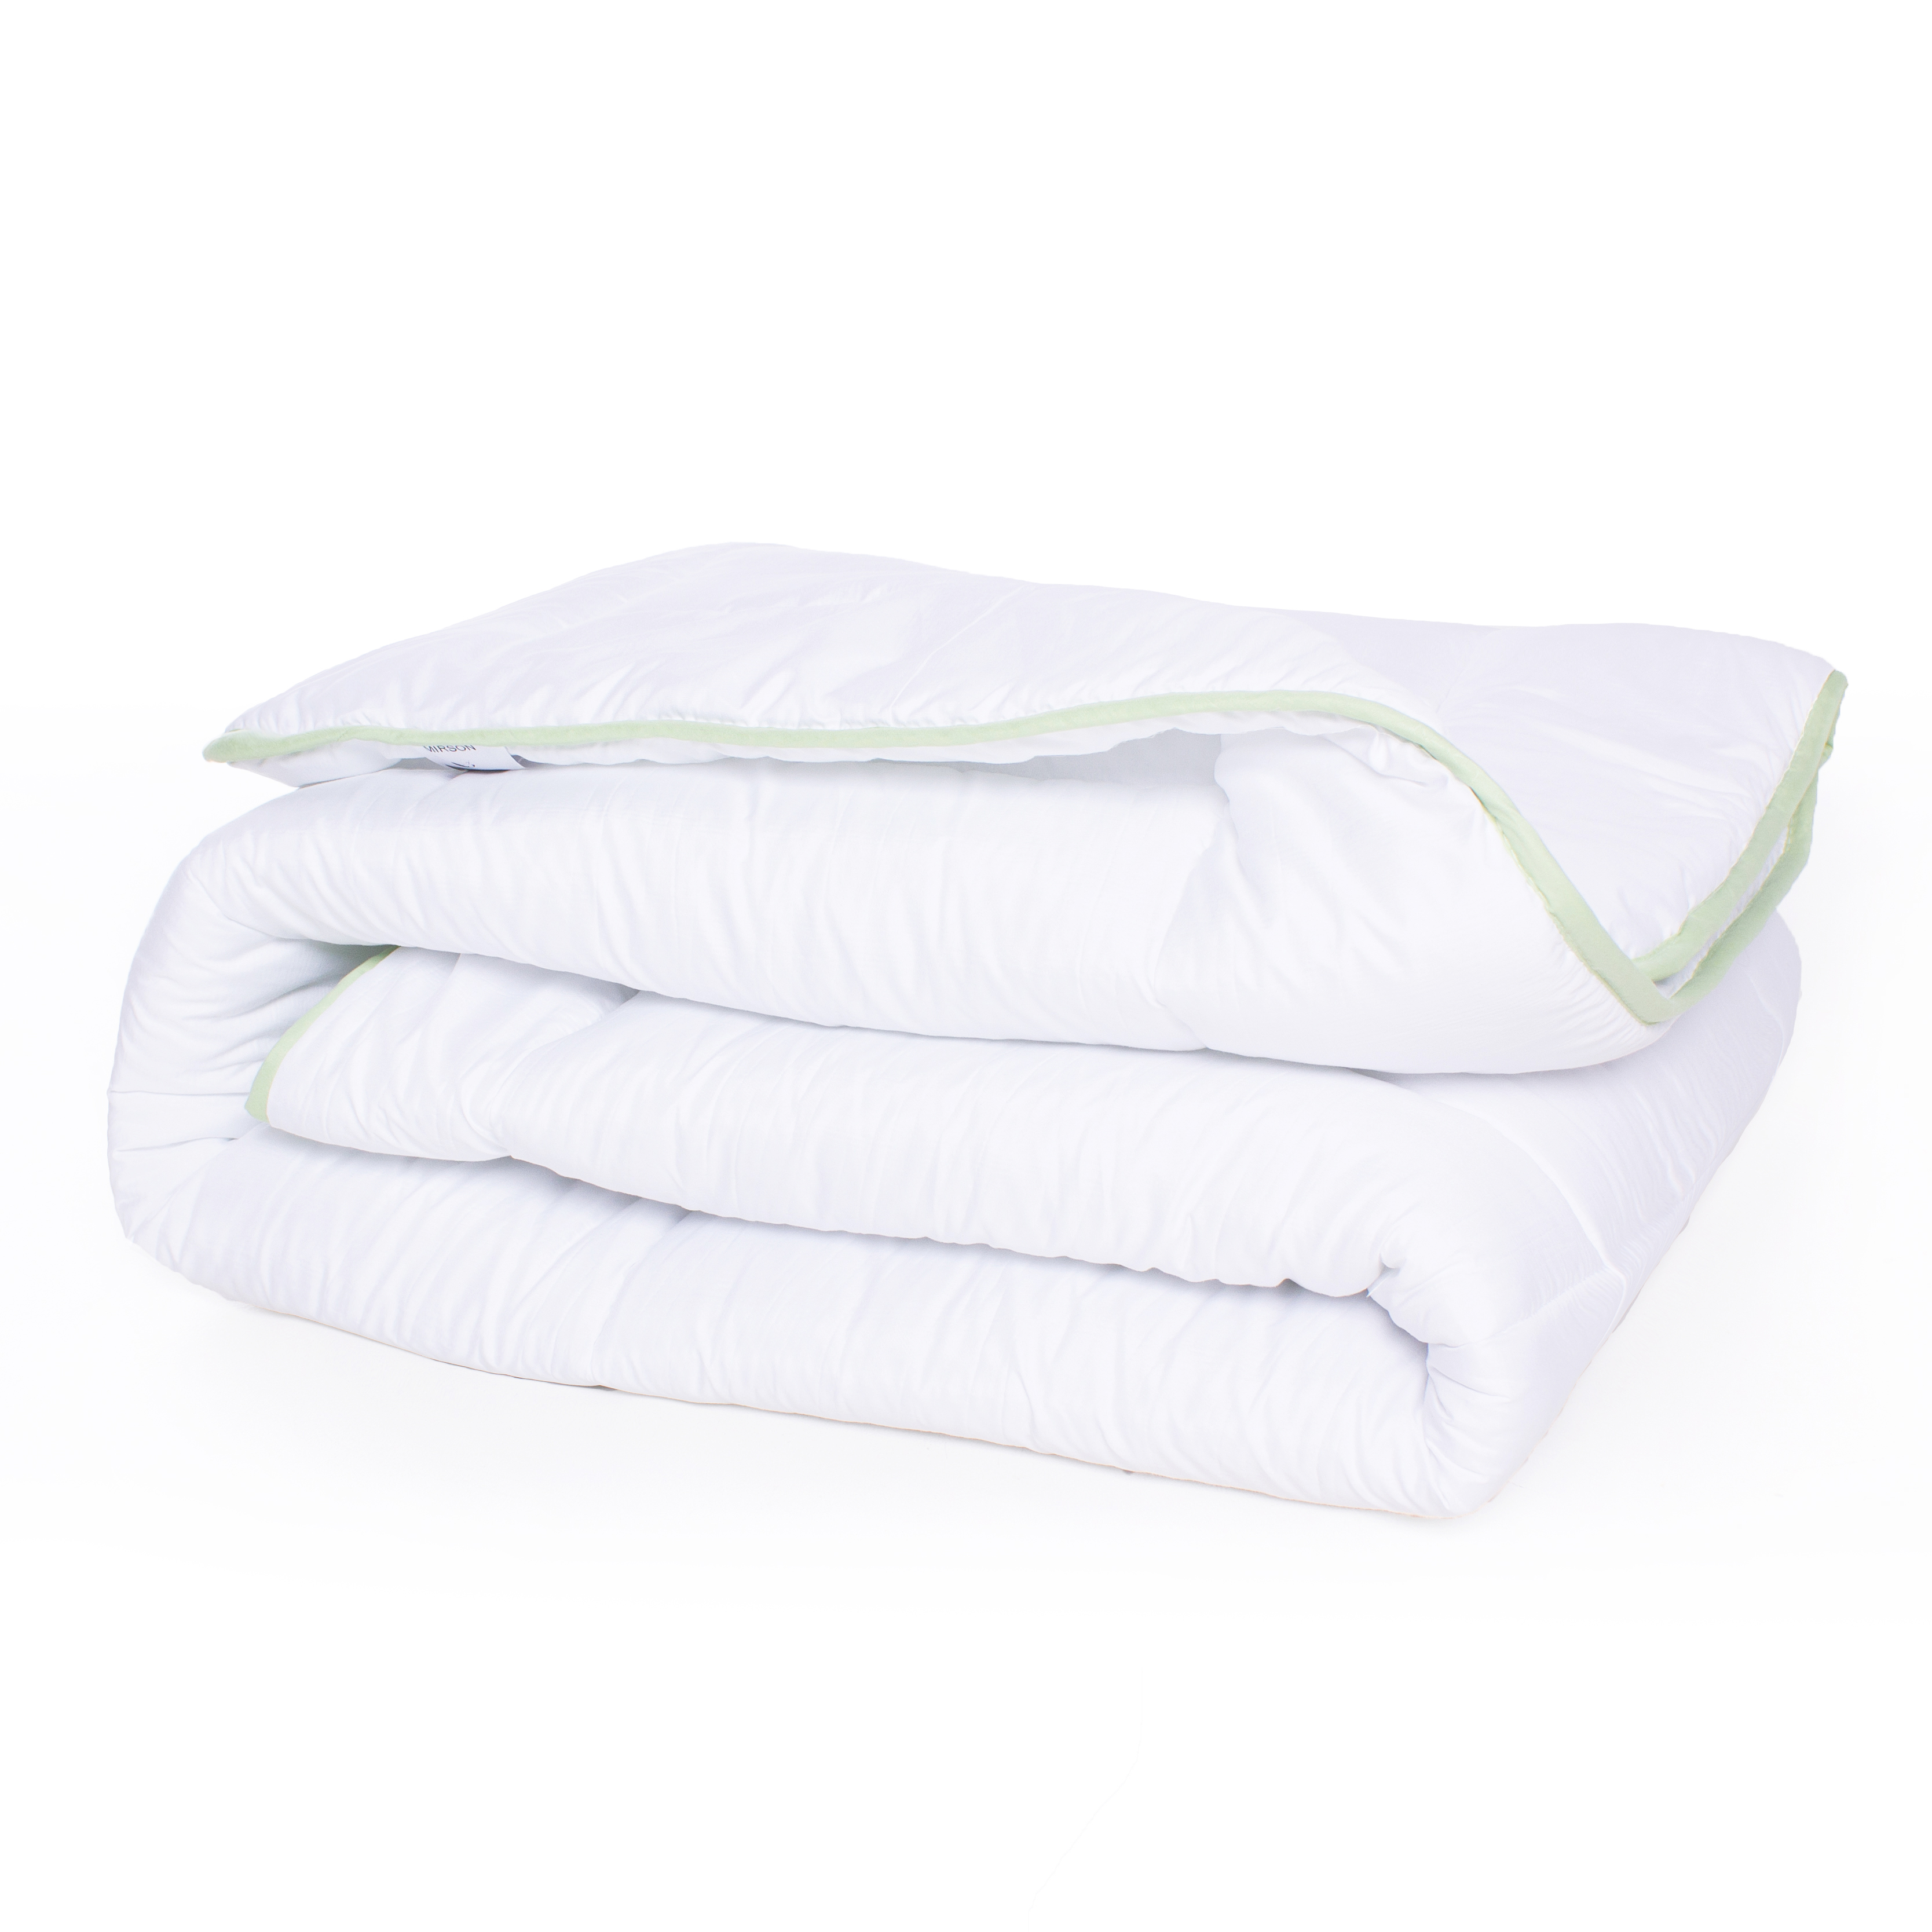 Одеяло антиаллергенное MirSon EcoSilk №002, демисезонное, 220x240 см, белое - фото 2